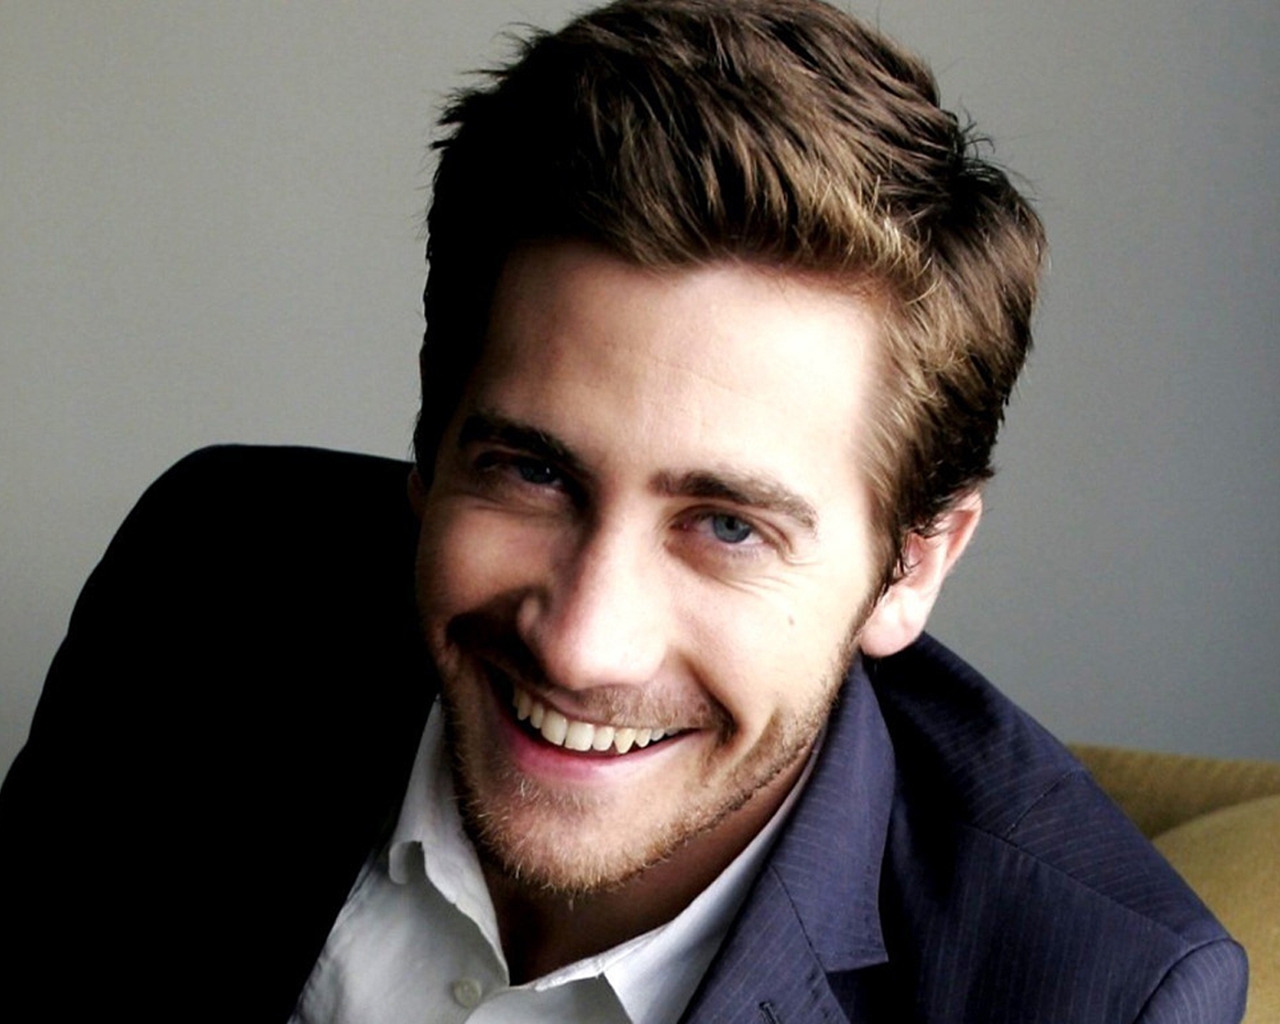 Jake Gyllenhaal Smile for 1280 x 1024 resolution